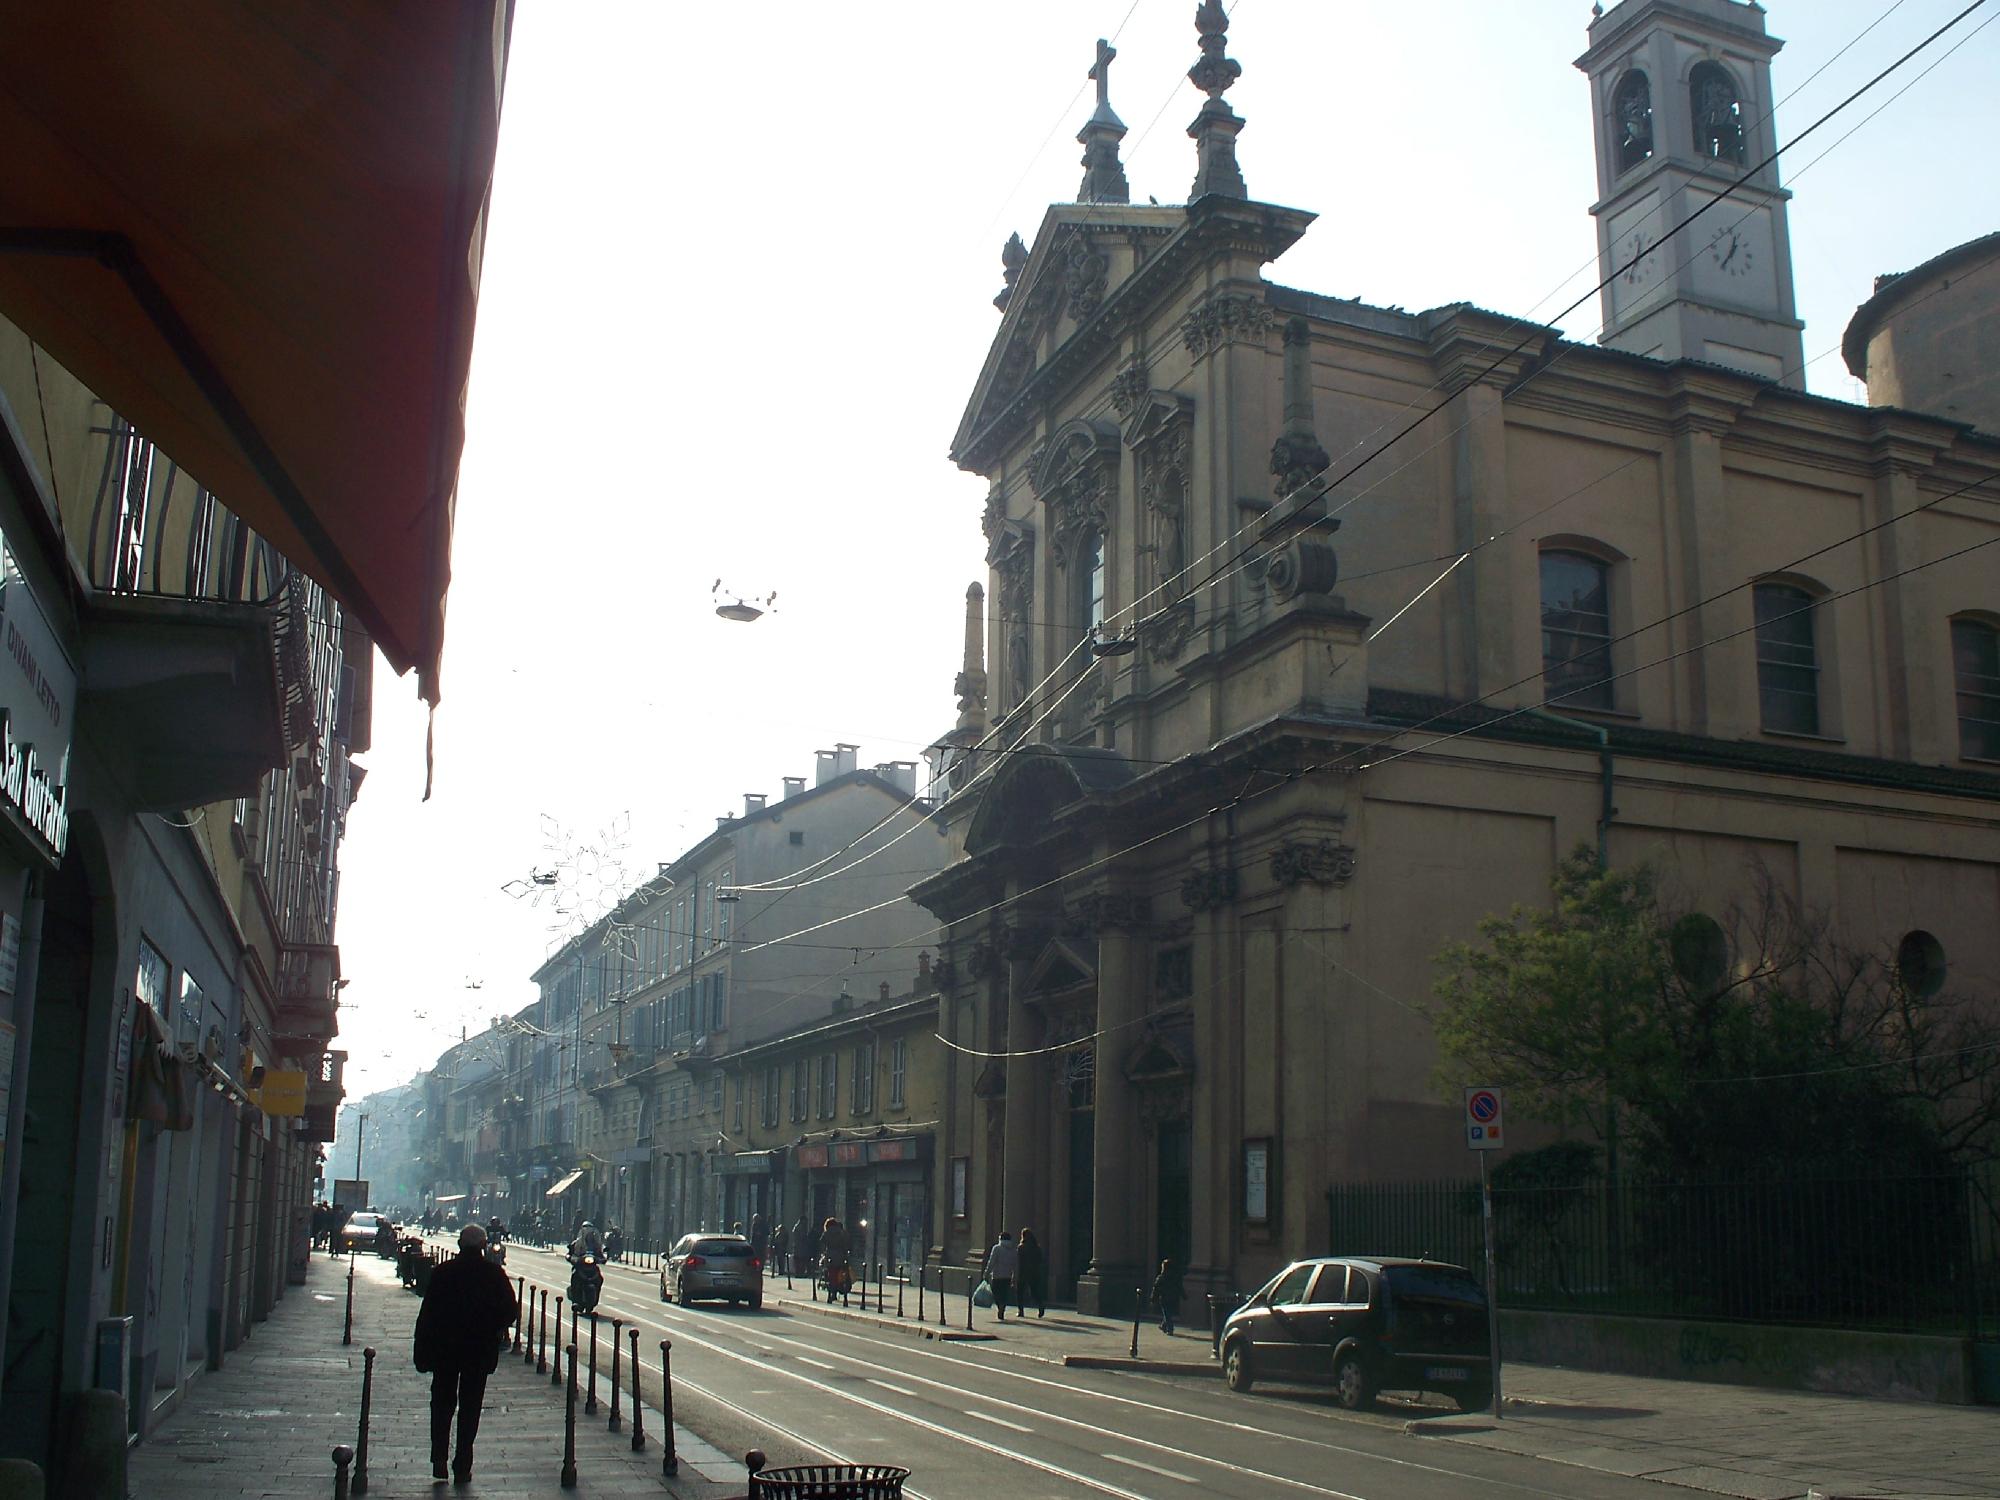 Corso San Gottardo